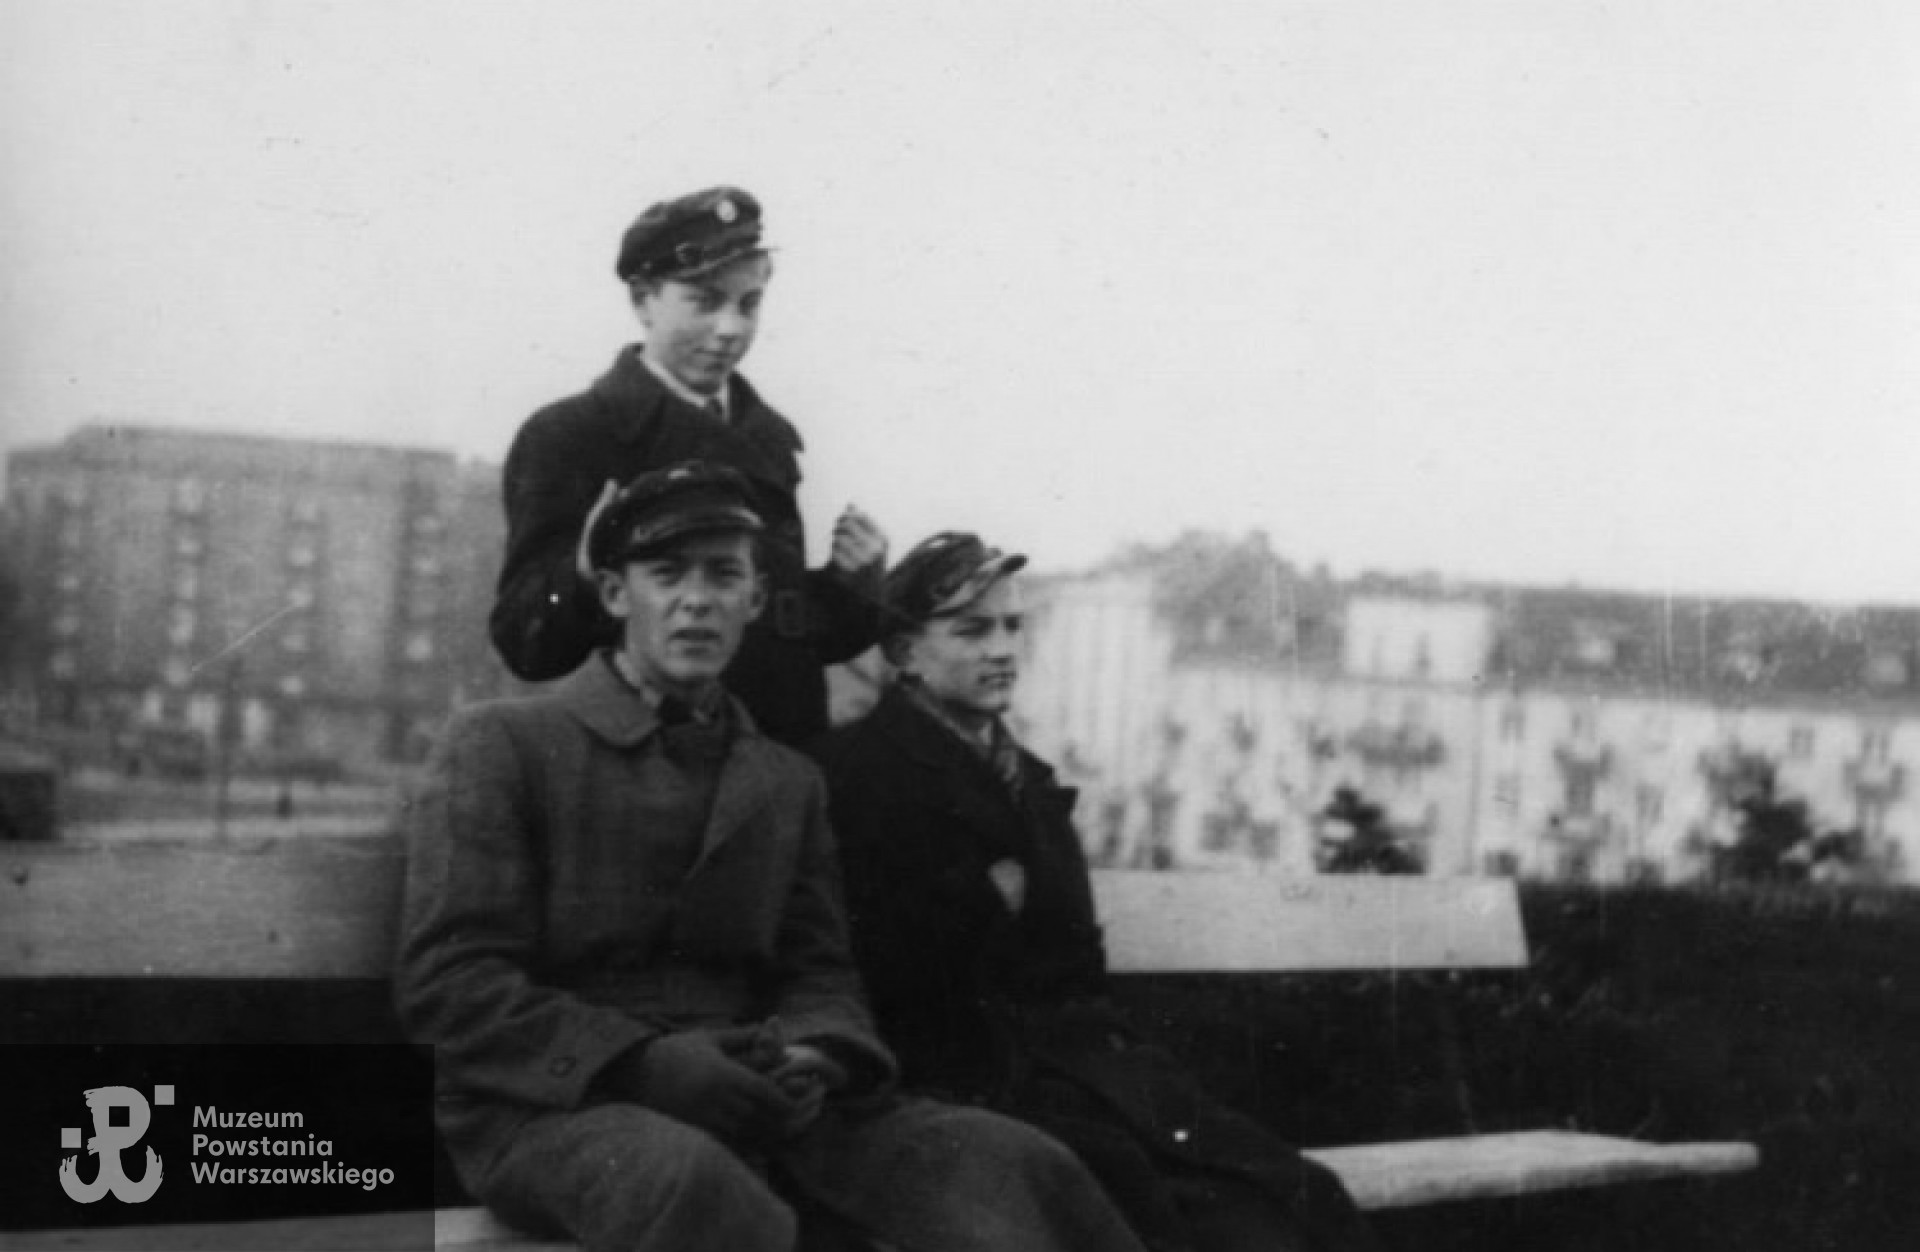 Listopad 1939. Olgierd Budrewicz (siedzi pierwszy od lewej) z kolegami na ławce w Parku im. Stefana Żeromskiego na Żoliborzu. Fot. NN / MPW